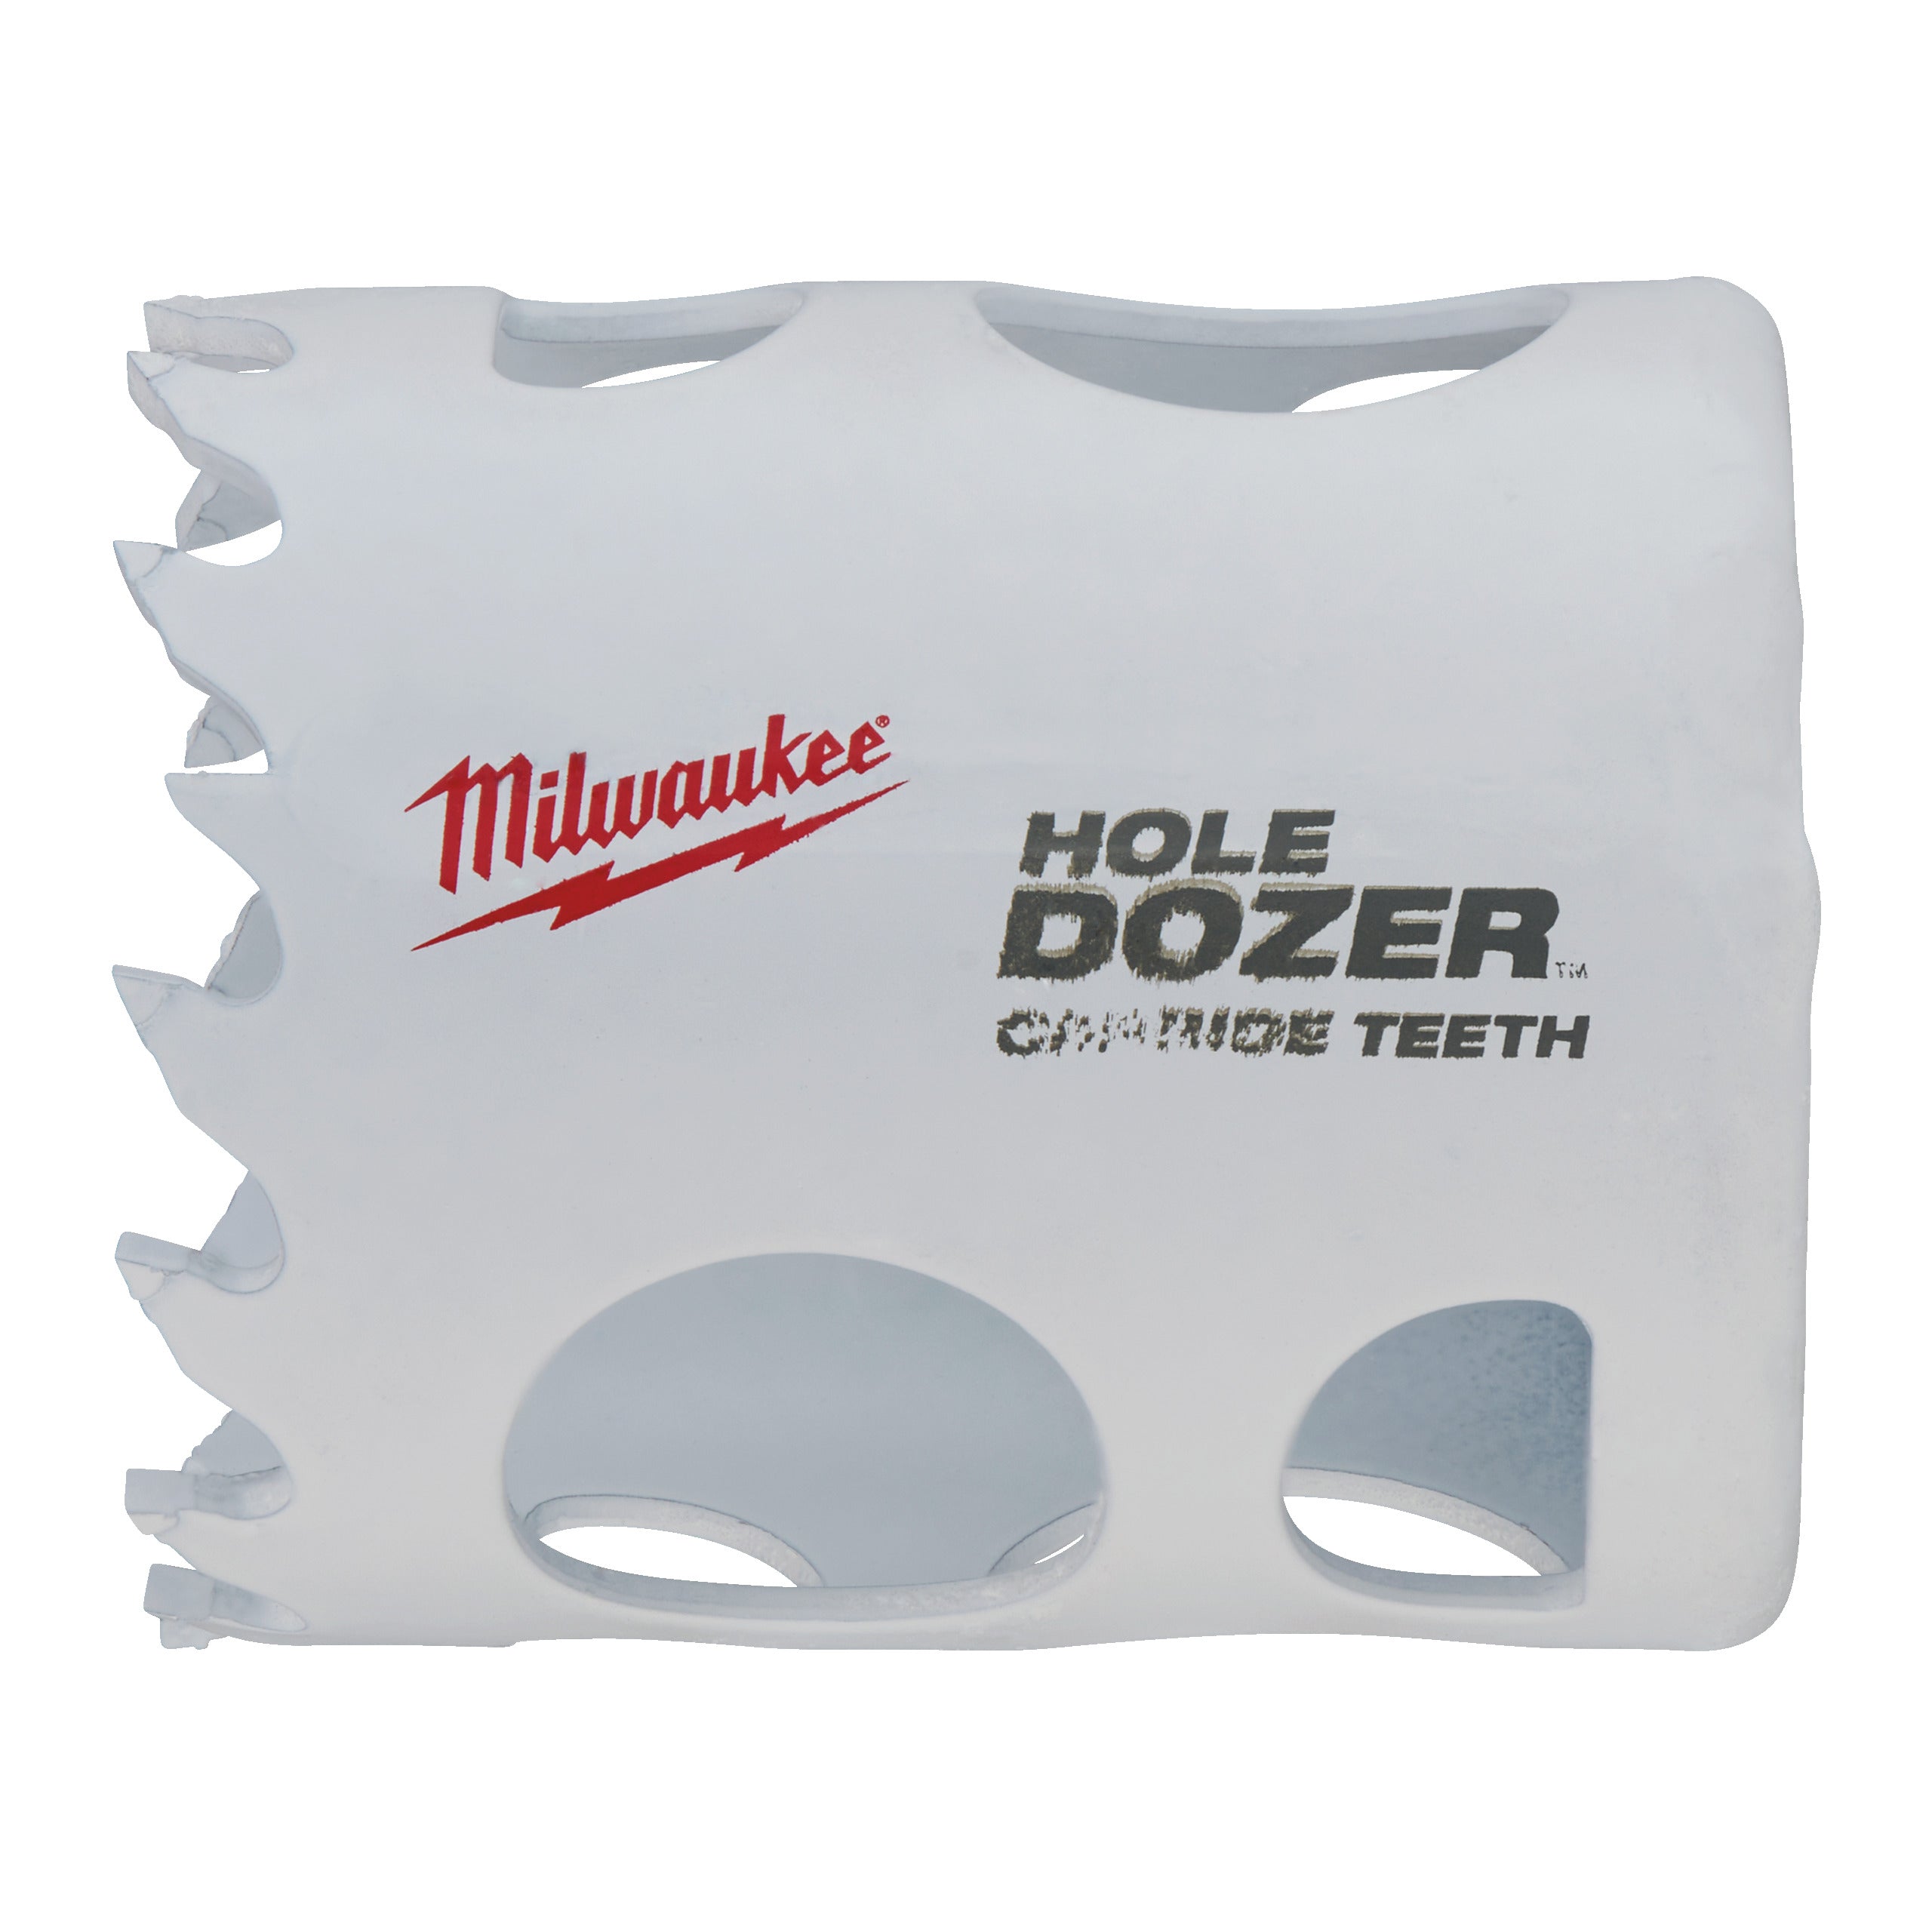 Carotă Hole Dozer cu dinți din carbură 41 mm Milwaukee, cod 49560714